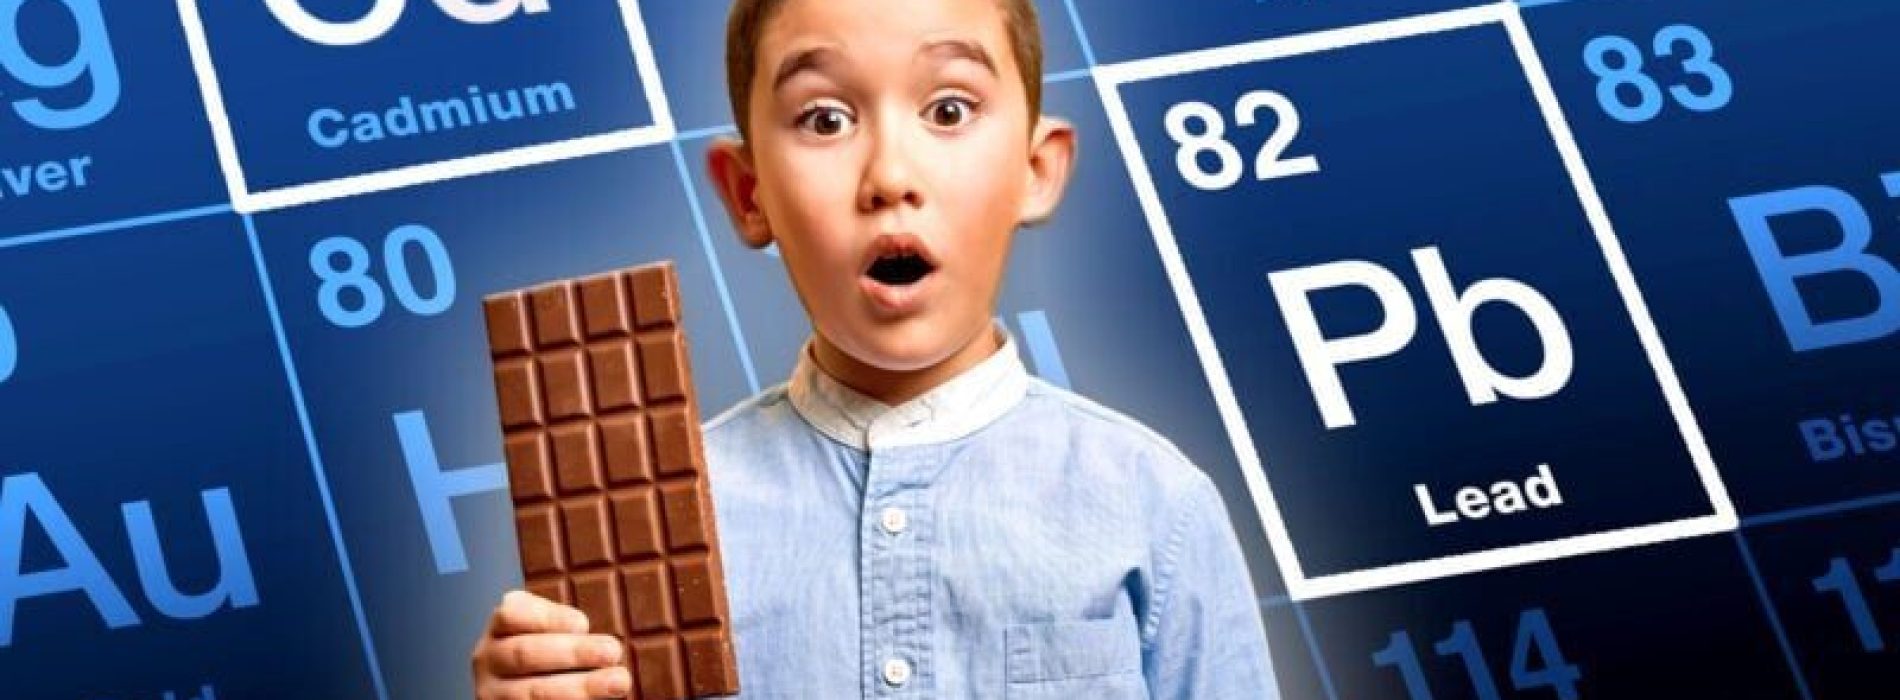 Bitterzoet: studie legt verborgen gevaren van zware metalen in chocolade bloot